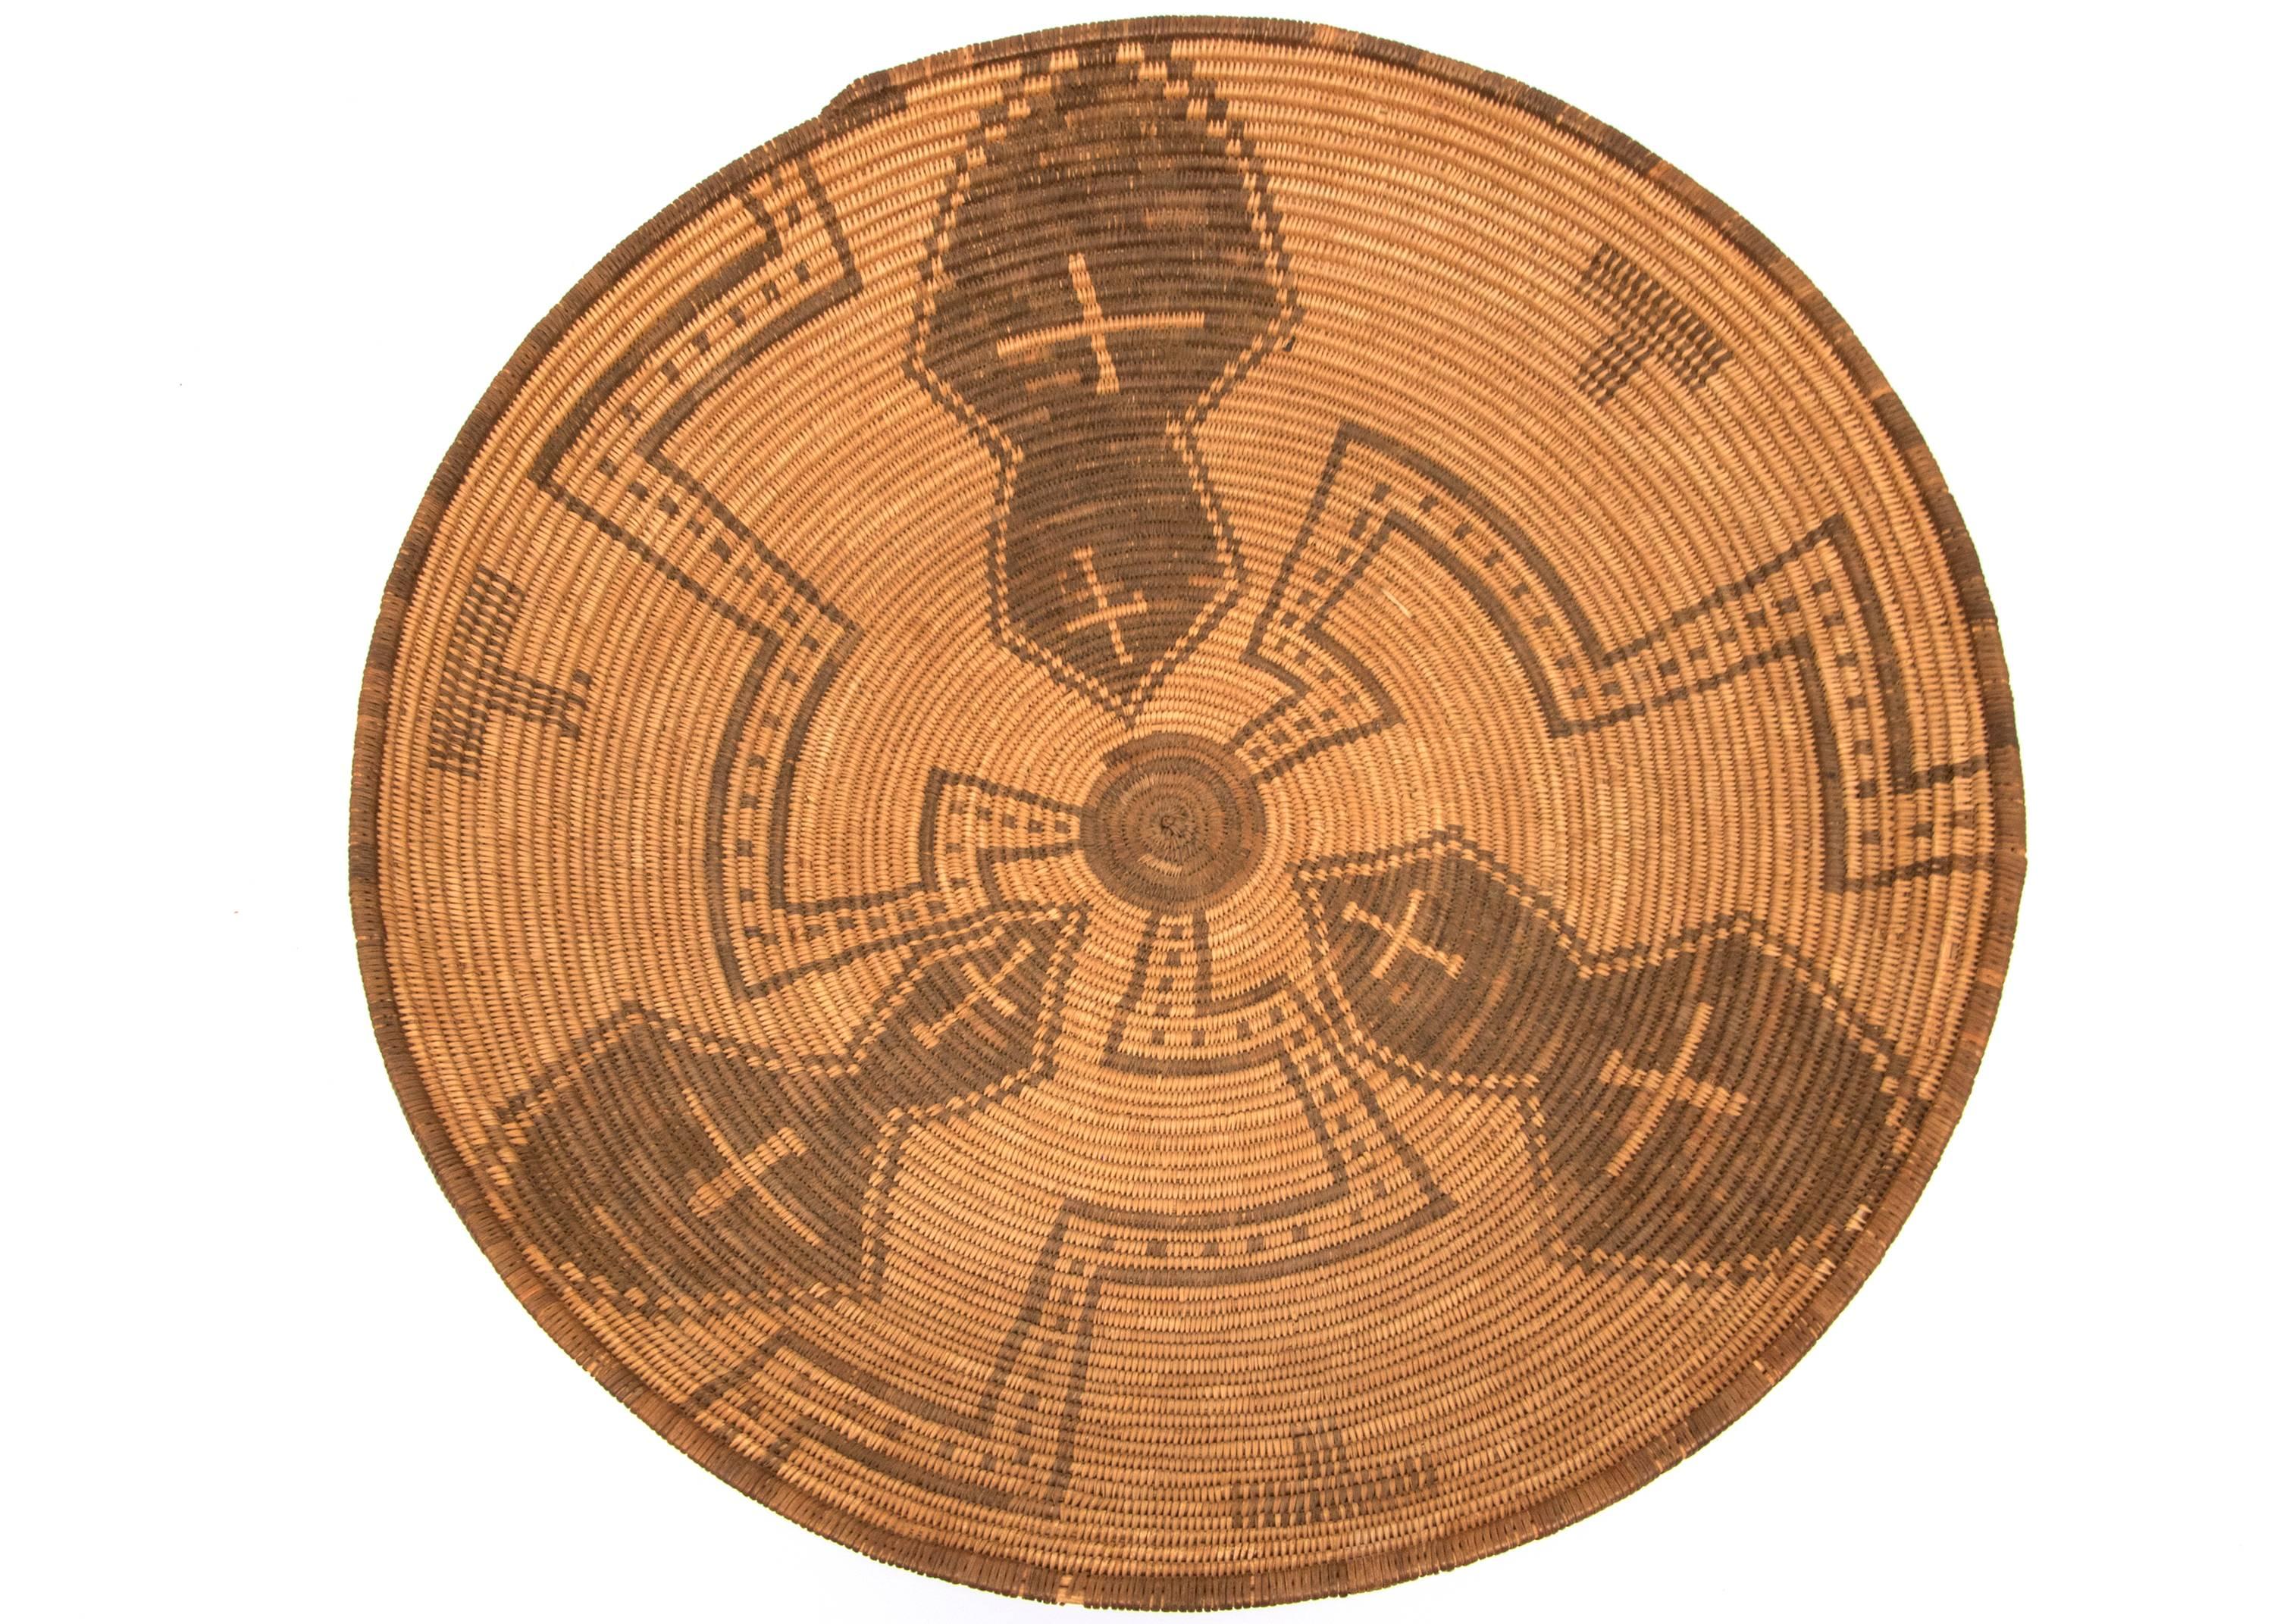 Vintage 19. Jahrhundert, um 1890, Apache (nordamerikanischer Indianer) Korb in einer runden Schale/Tablett  eine meisterhaft geflochtene Form aus Weide und Teufelskralle mit Kreuz und mäandernden Radelementen.  Die Apachen, ein nomadisch lebender